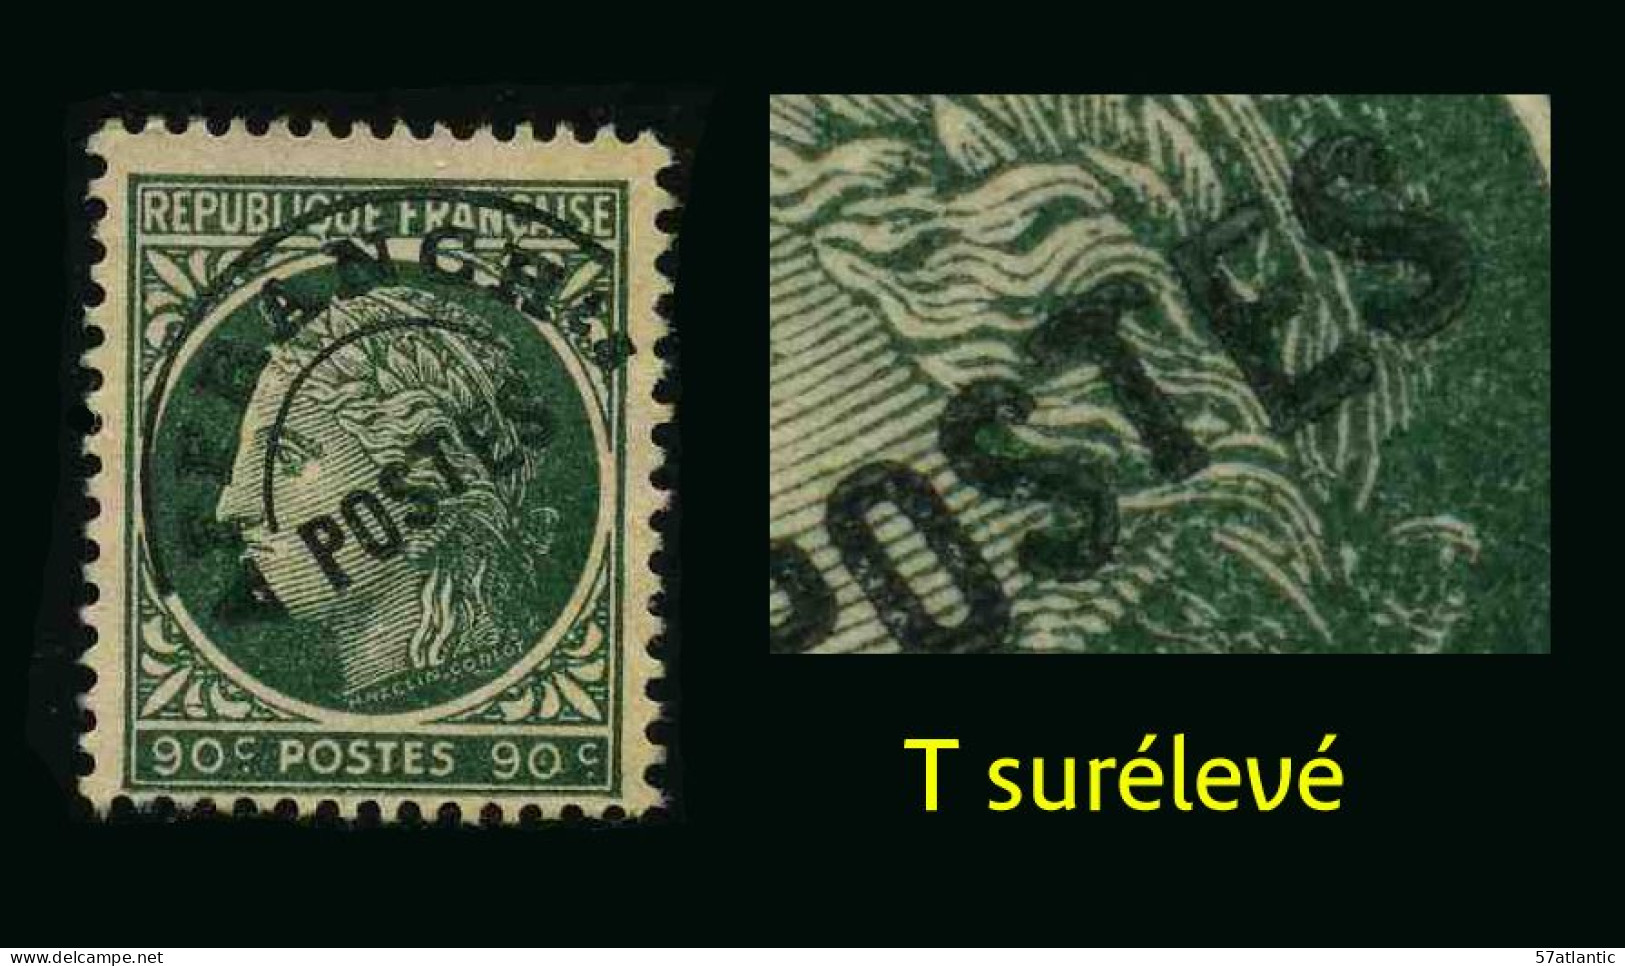 FRANCE - YT PREO 89 C  - VARIETE T Surélevé - TIMBRE SANS GOMME - Used Stamps